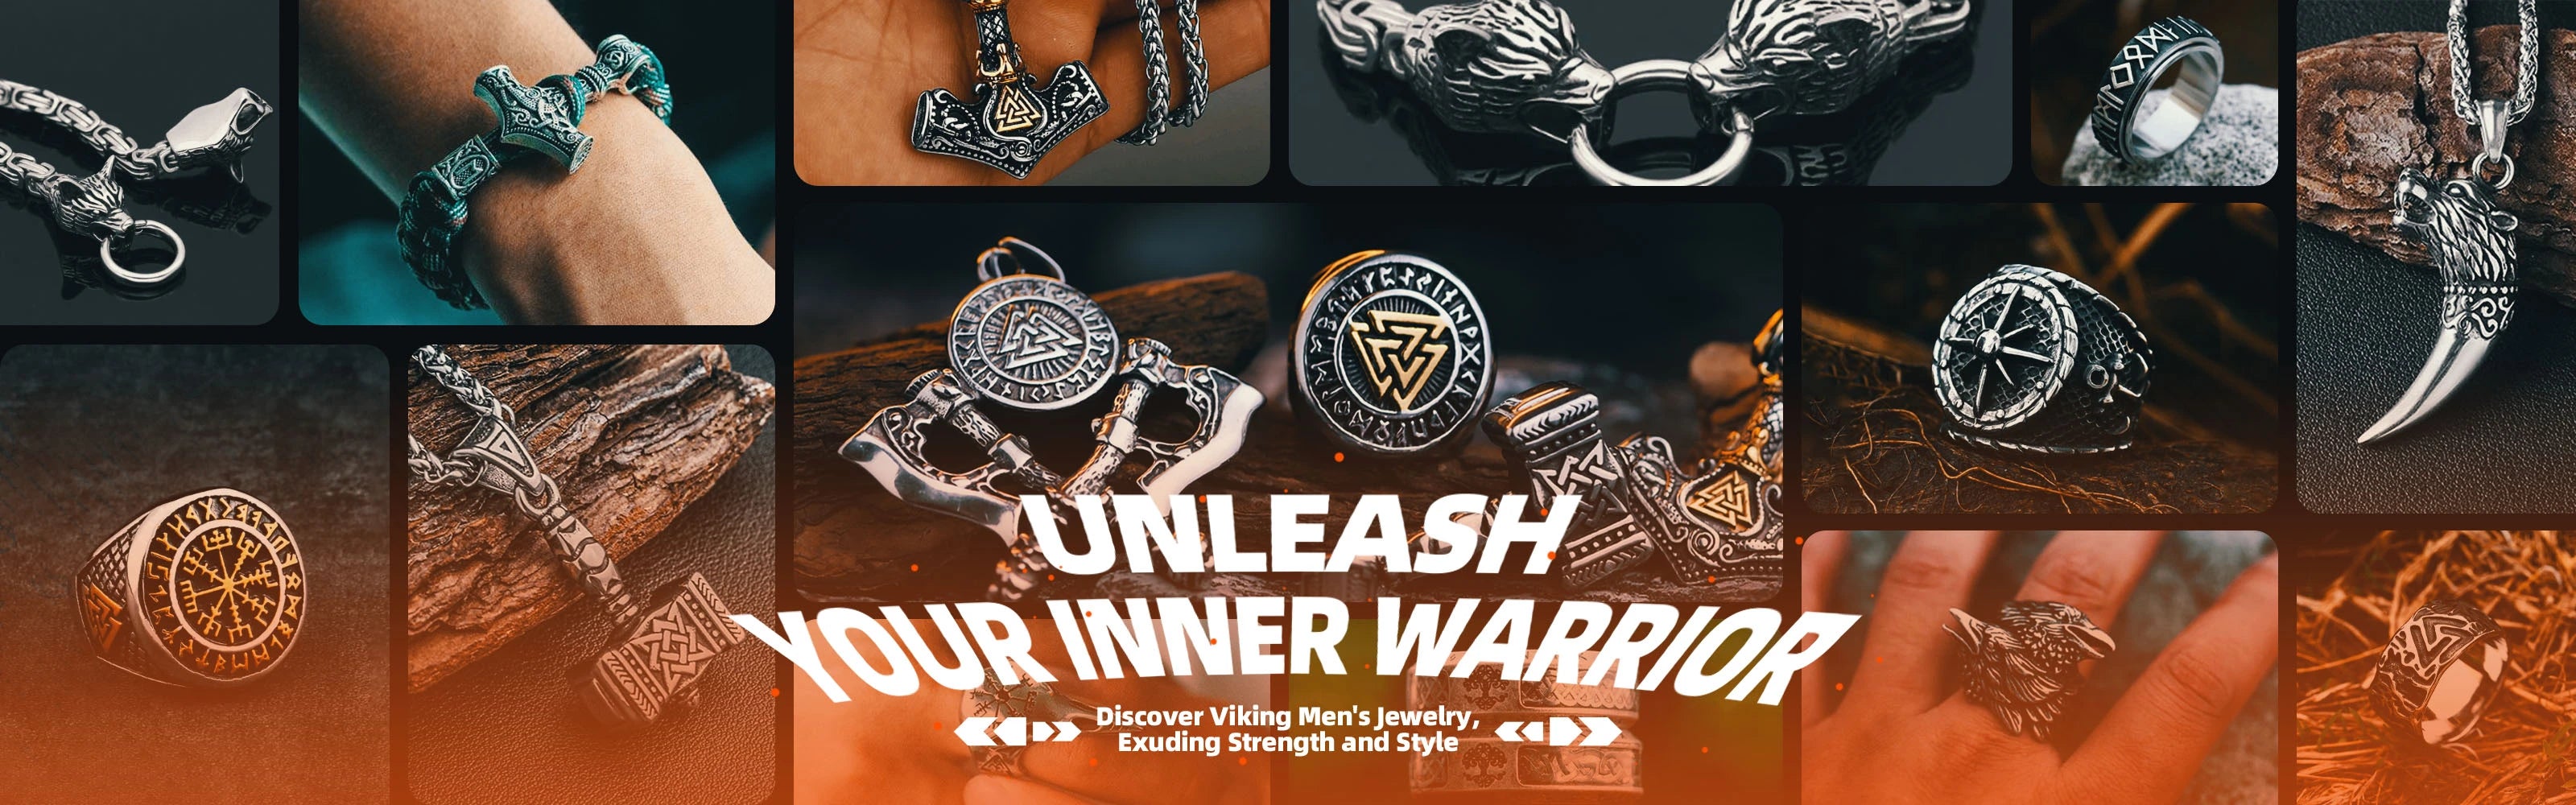 wolfha_viking_jewelry_banner